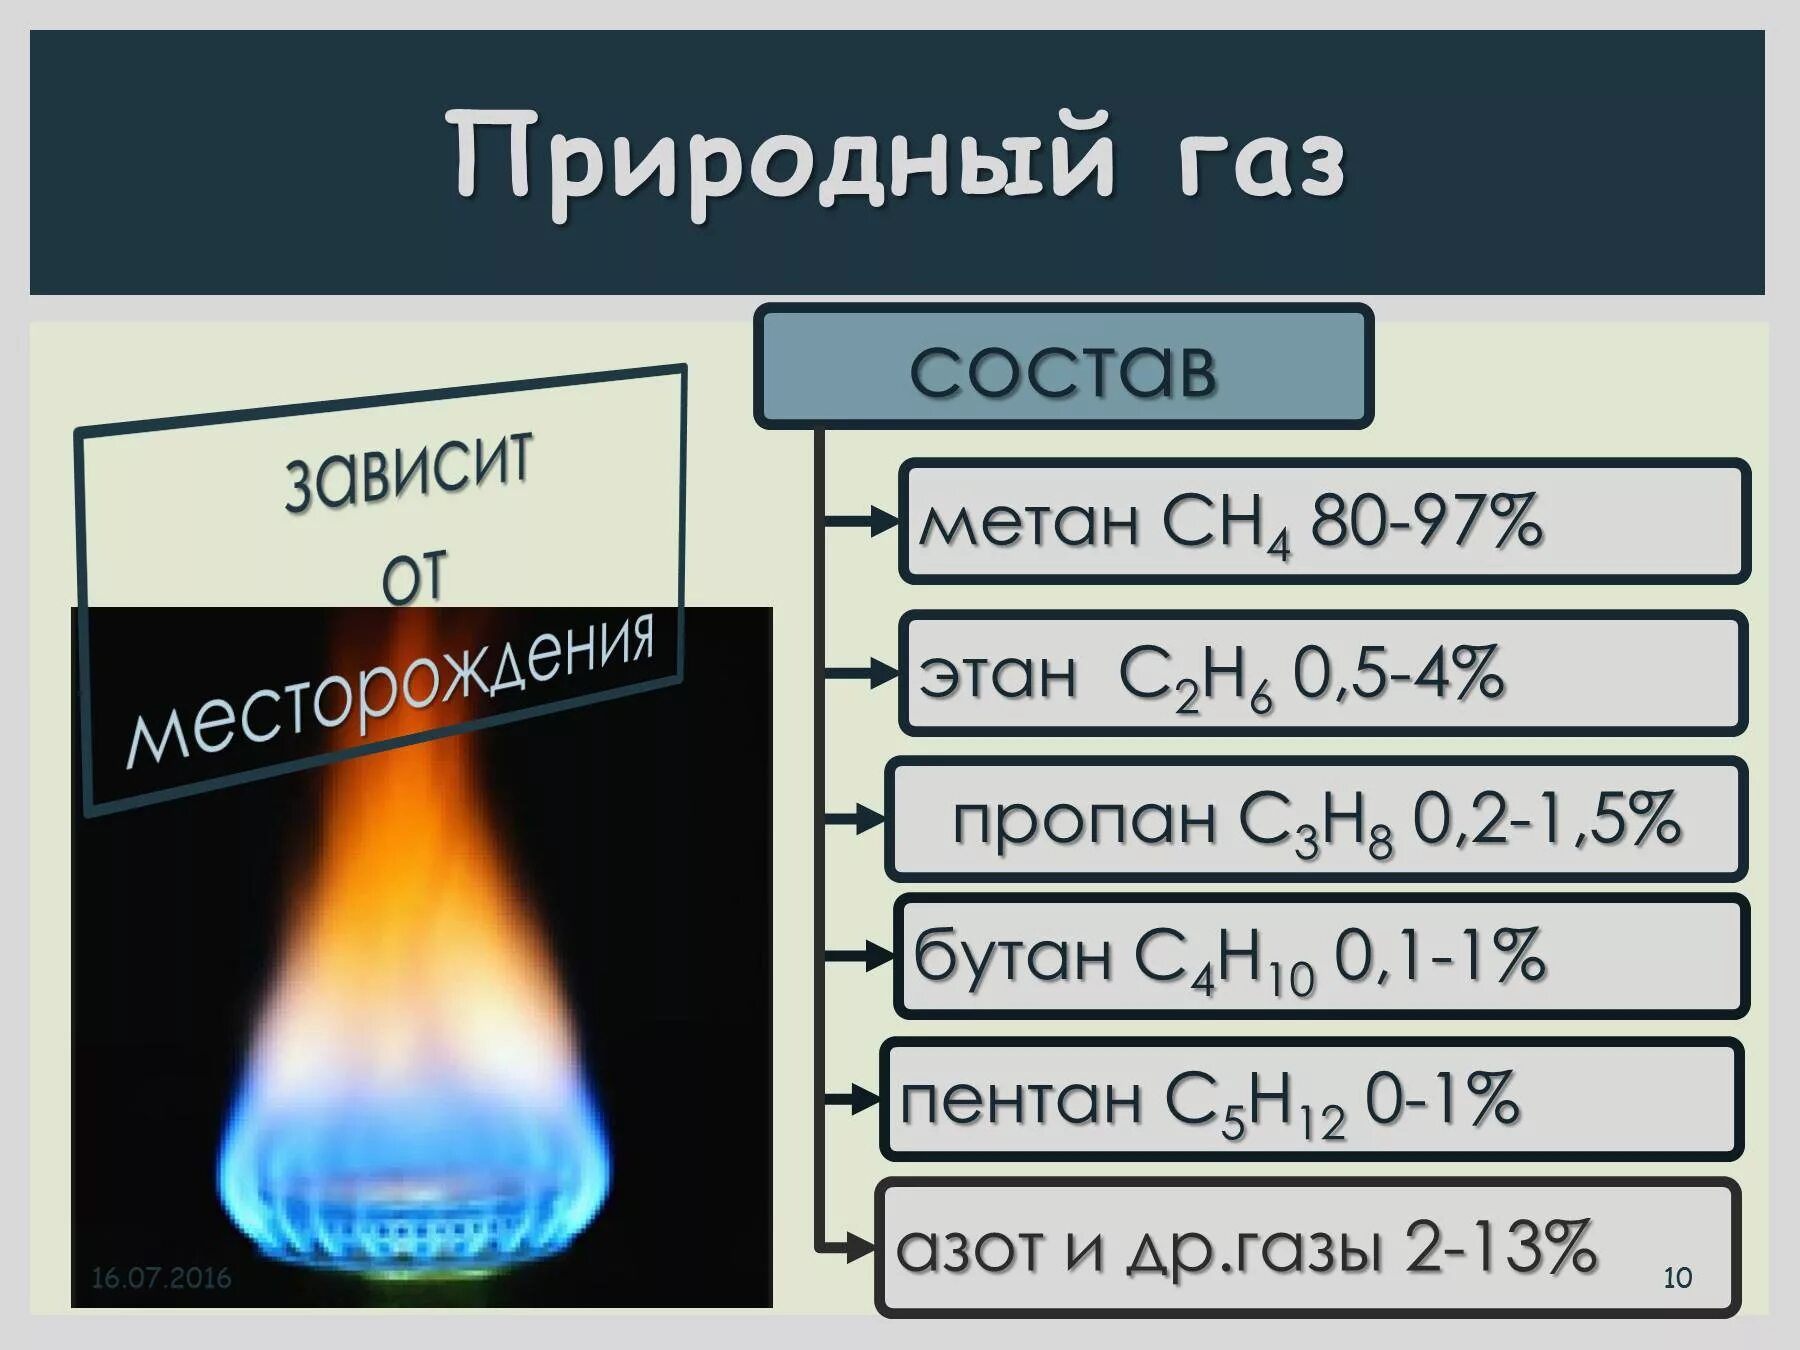 Природный газ форма. Состав смеси природного газа. Природный ГАЗ состав. Состав природного газа метан. Из чего состоит природный ГАЗ.